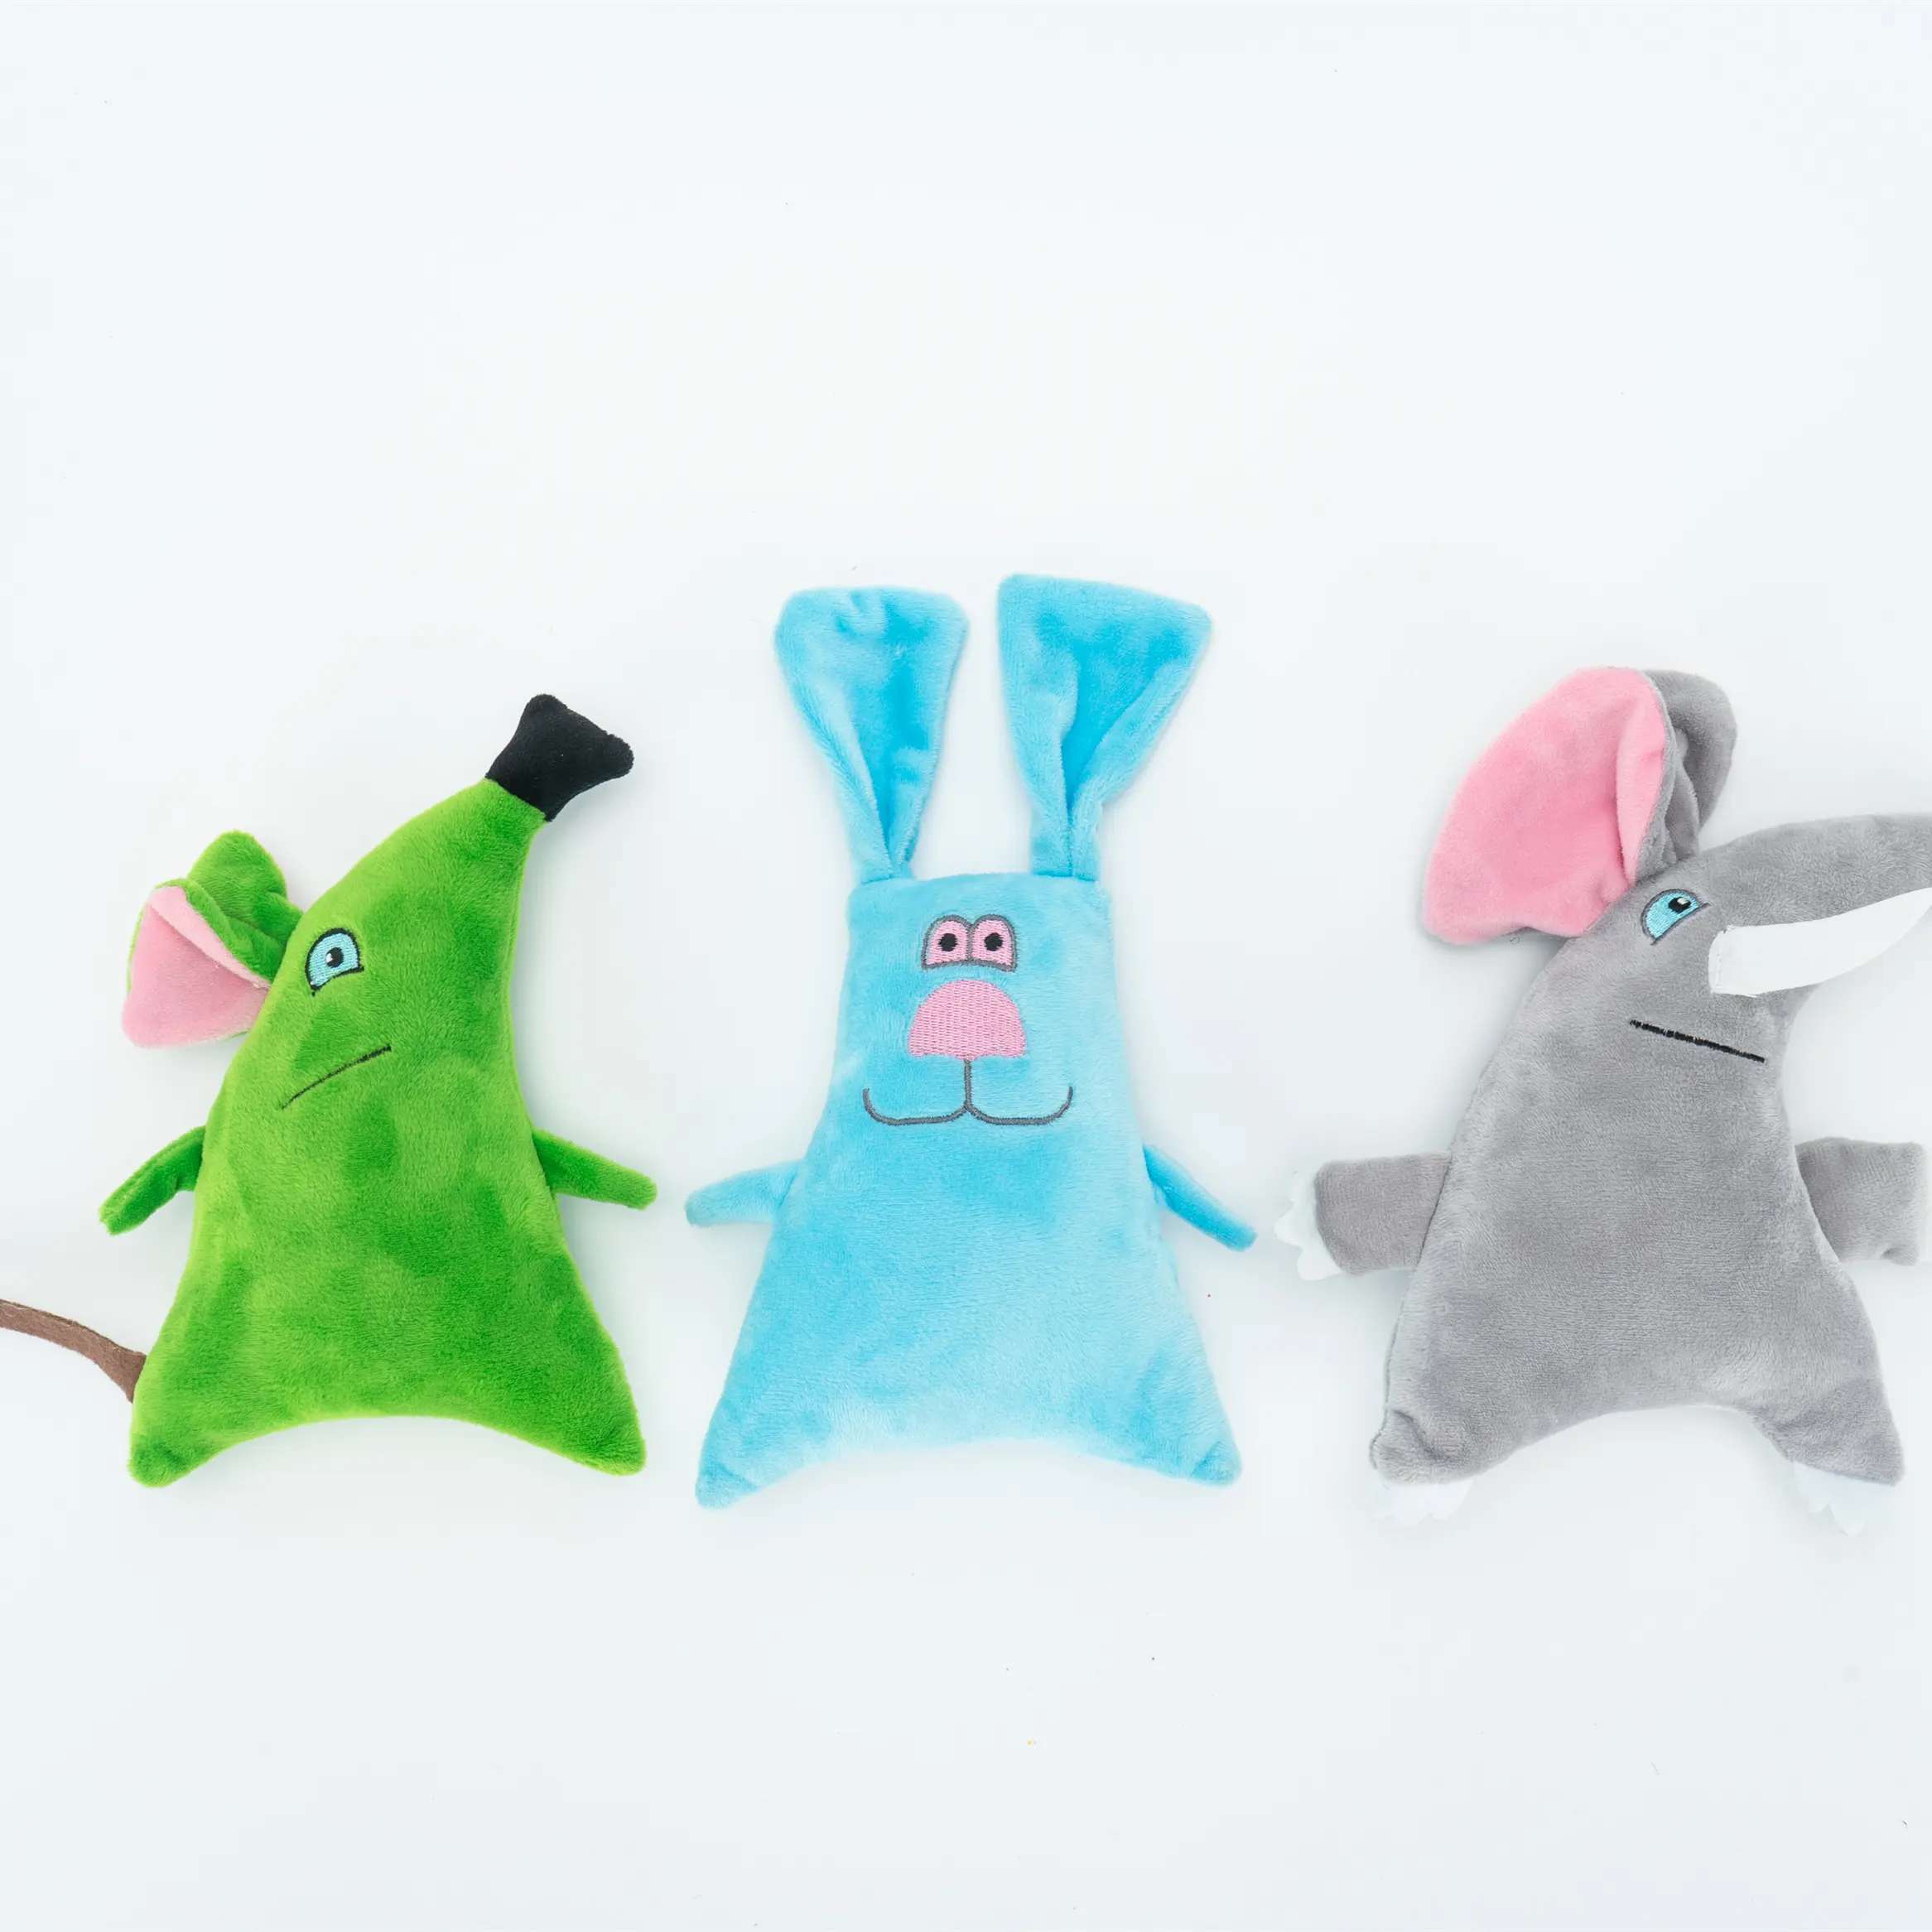 100% Polyester plush elephant rabbit mouse pet plush toy dog training toy